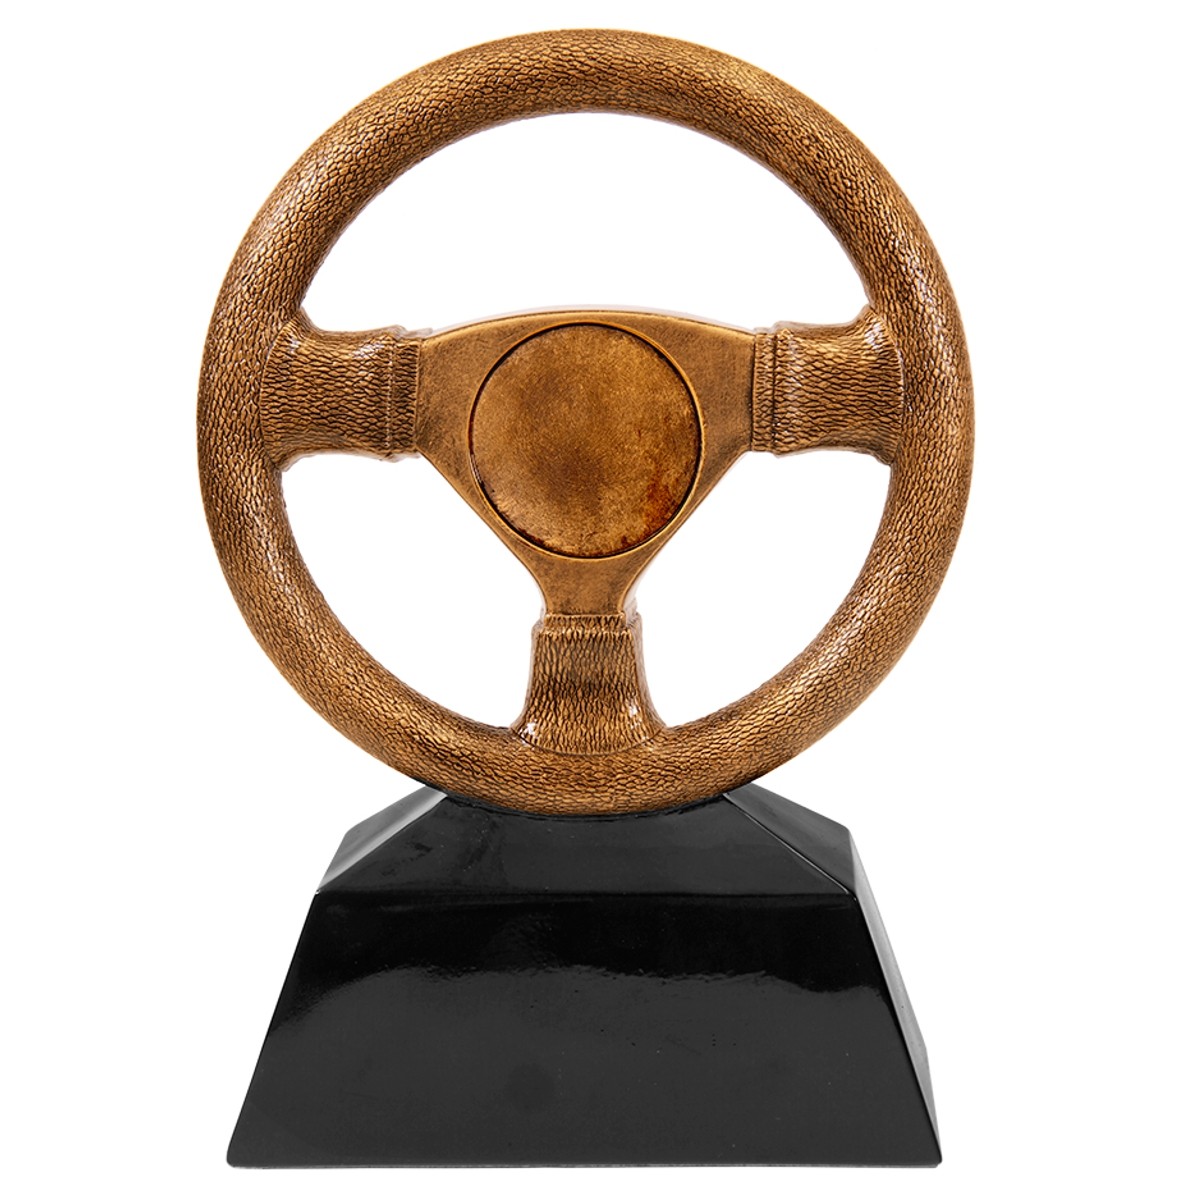 Steering Wheel Trophy Motorsport Award 220mm FREE Personalised Engraving 